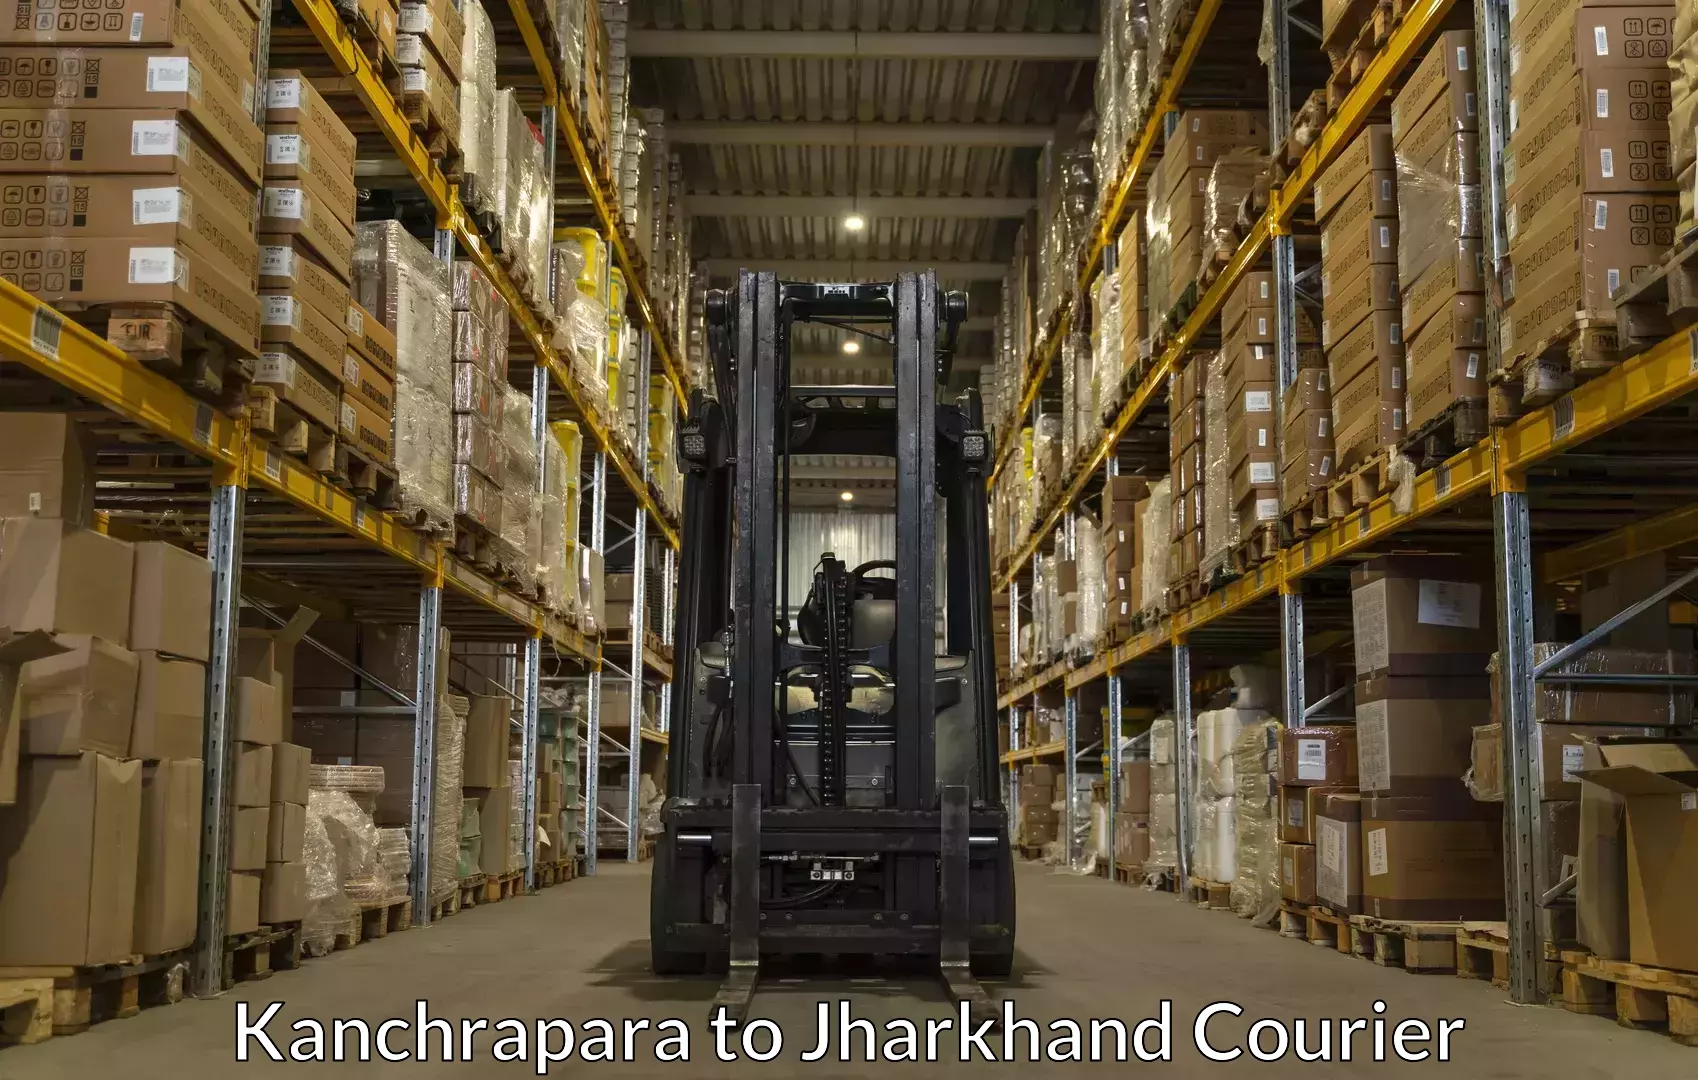 Baggage handling services Kanchrapara to Ranchi